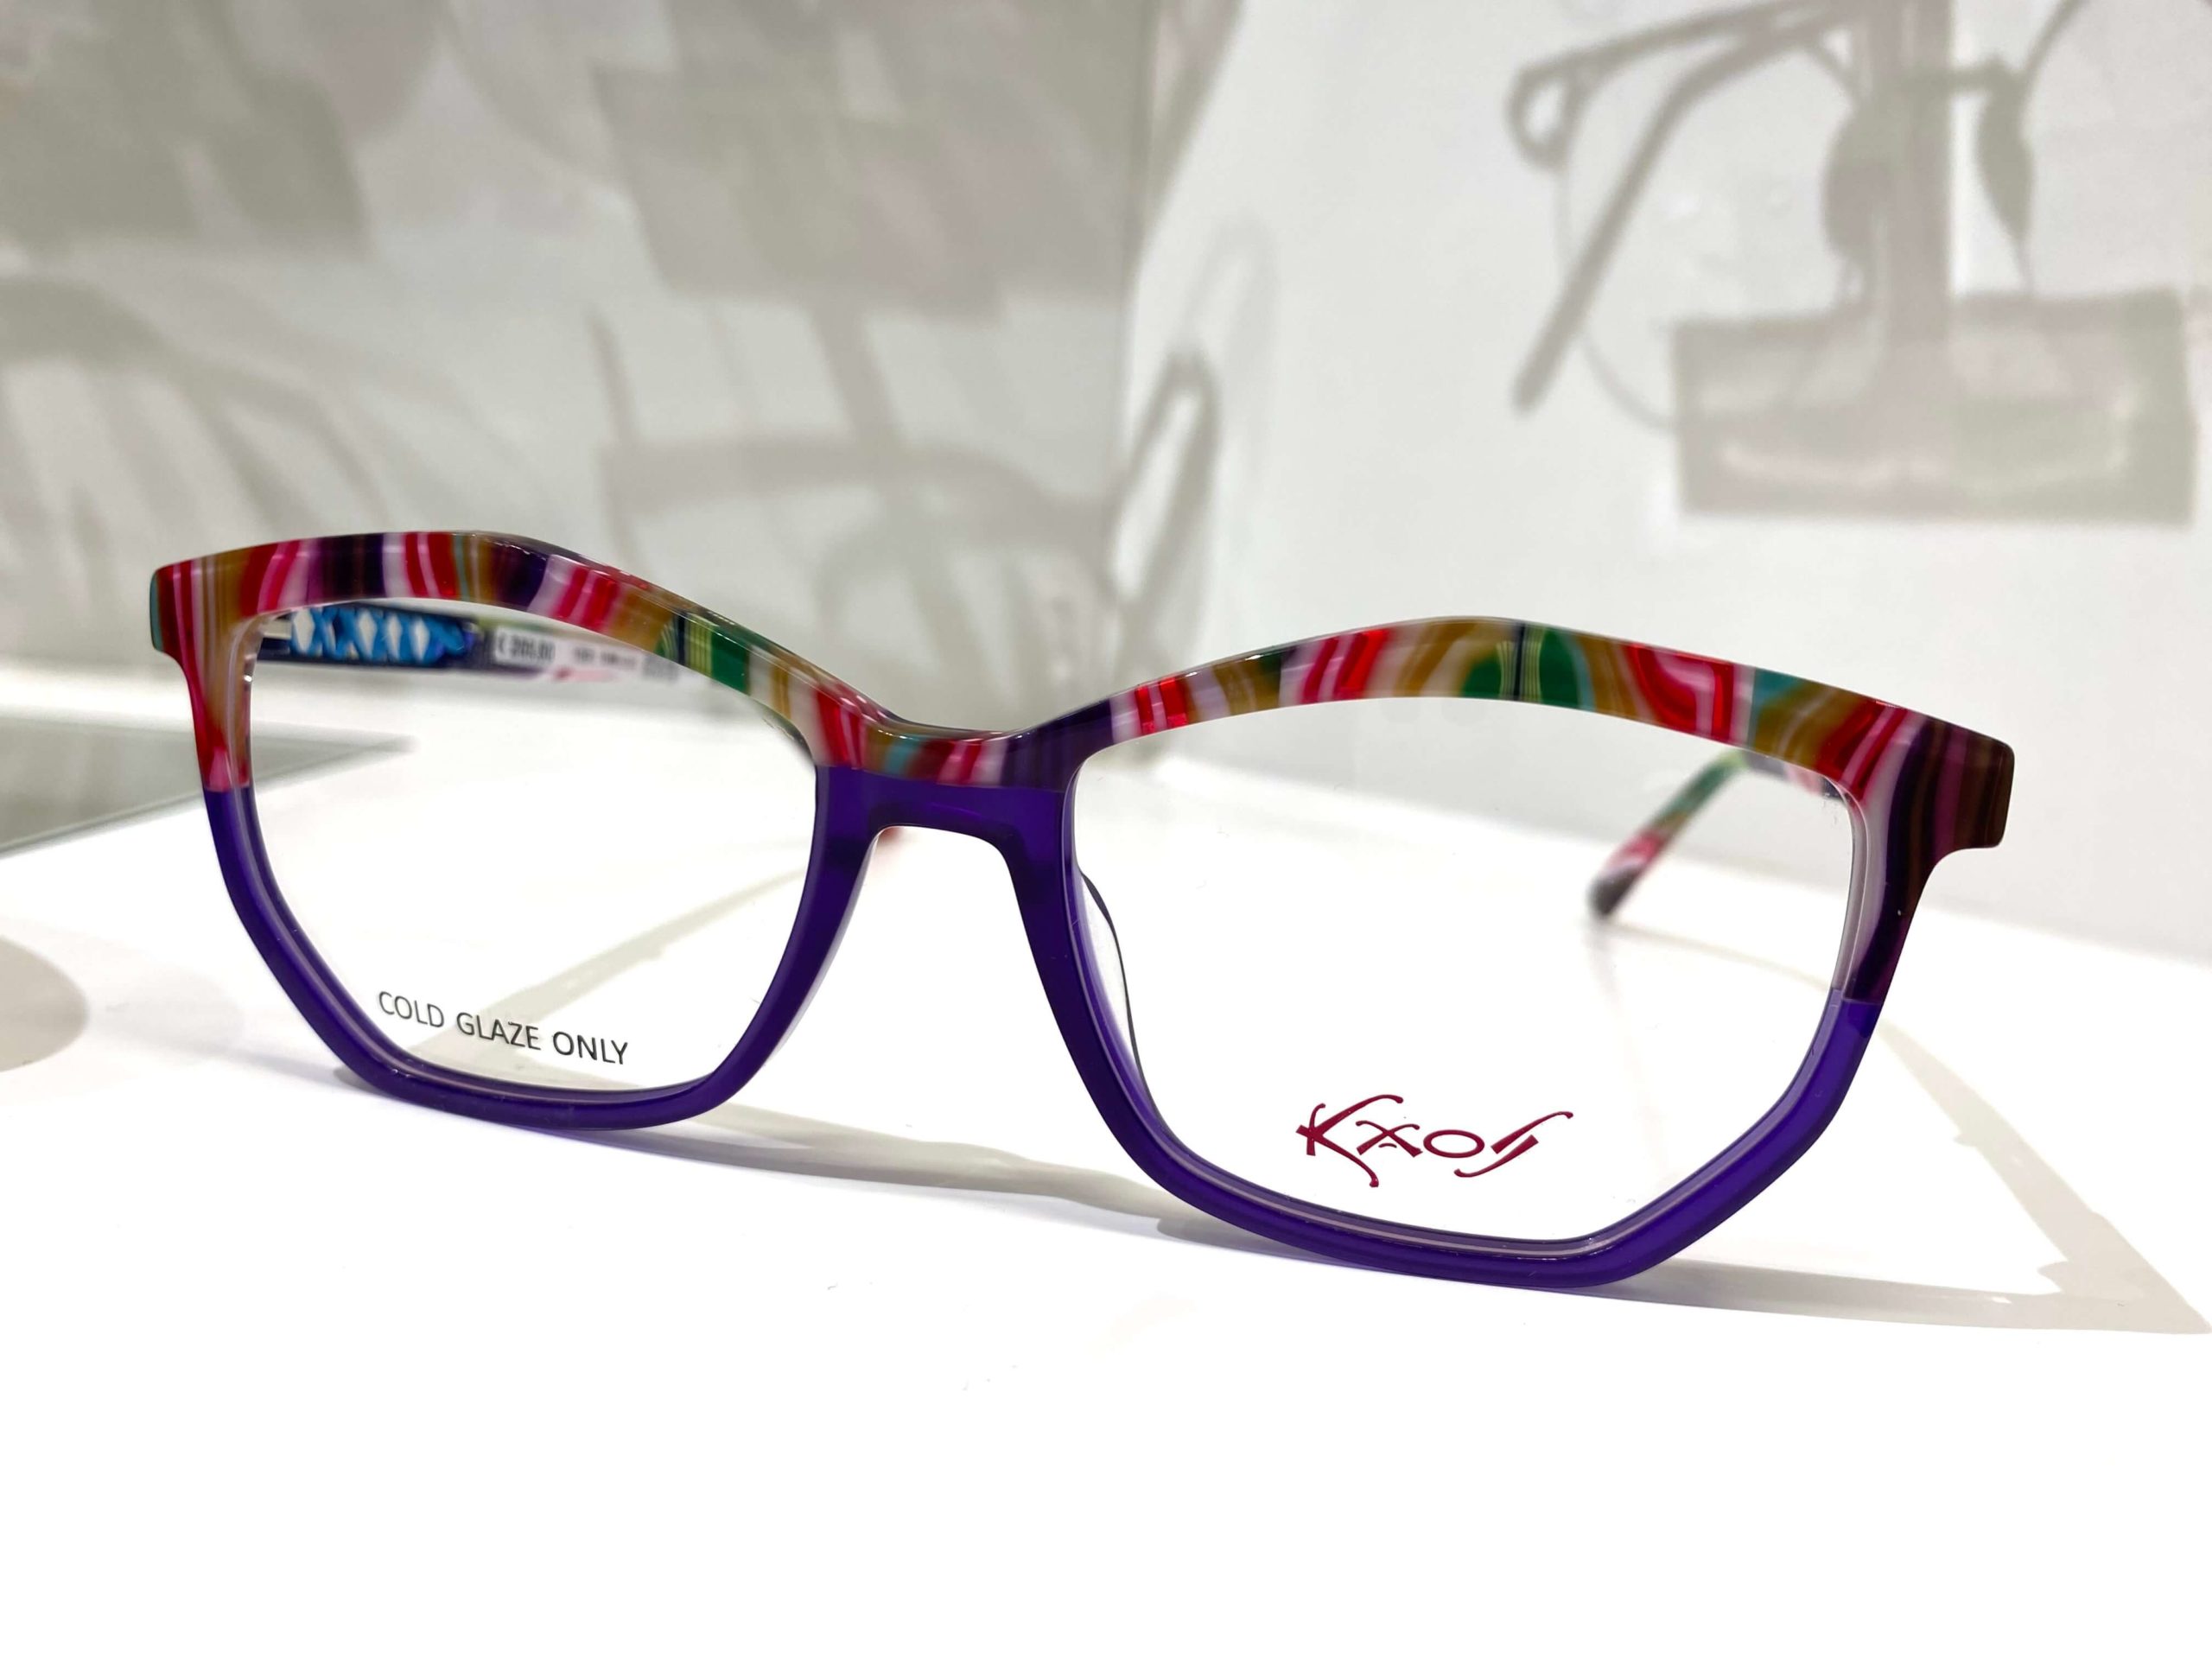 Brille von Kaos mit bunten Streifen auf der oberen Seite des Gestells